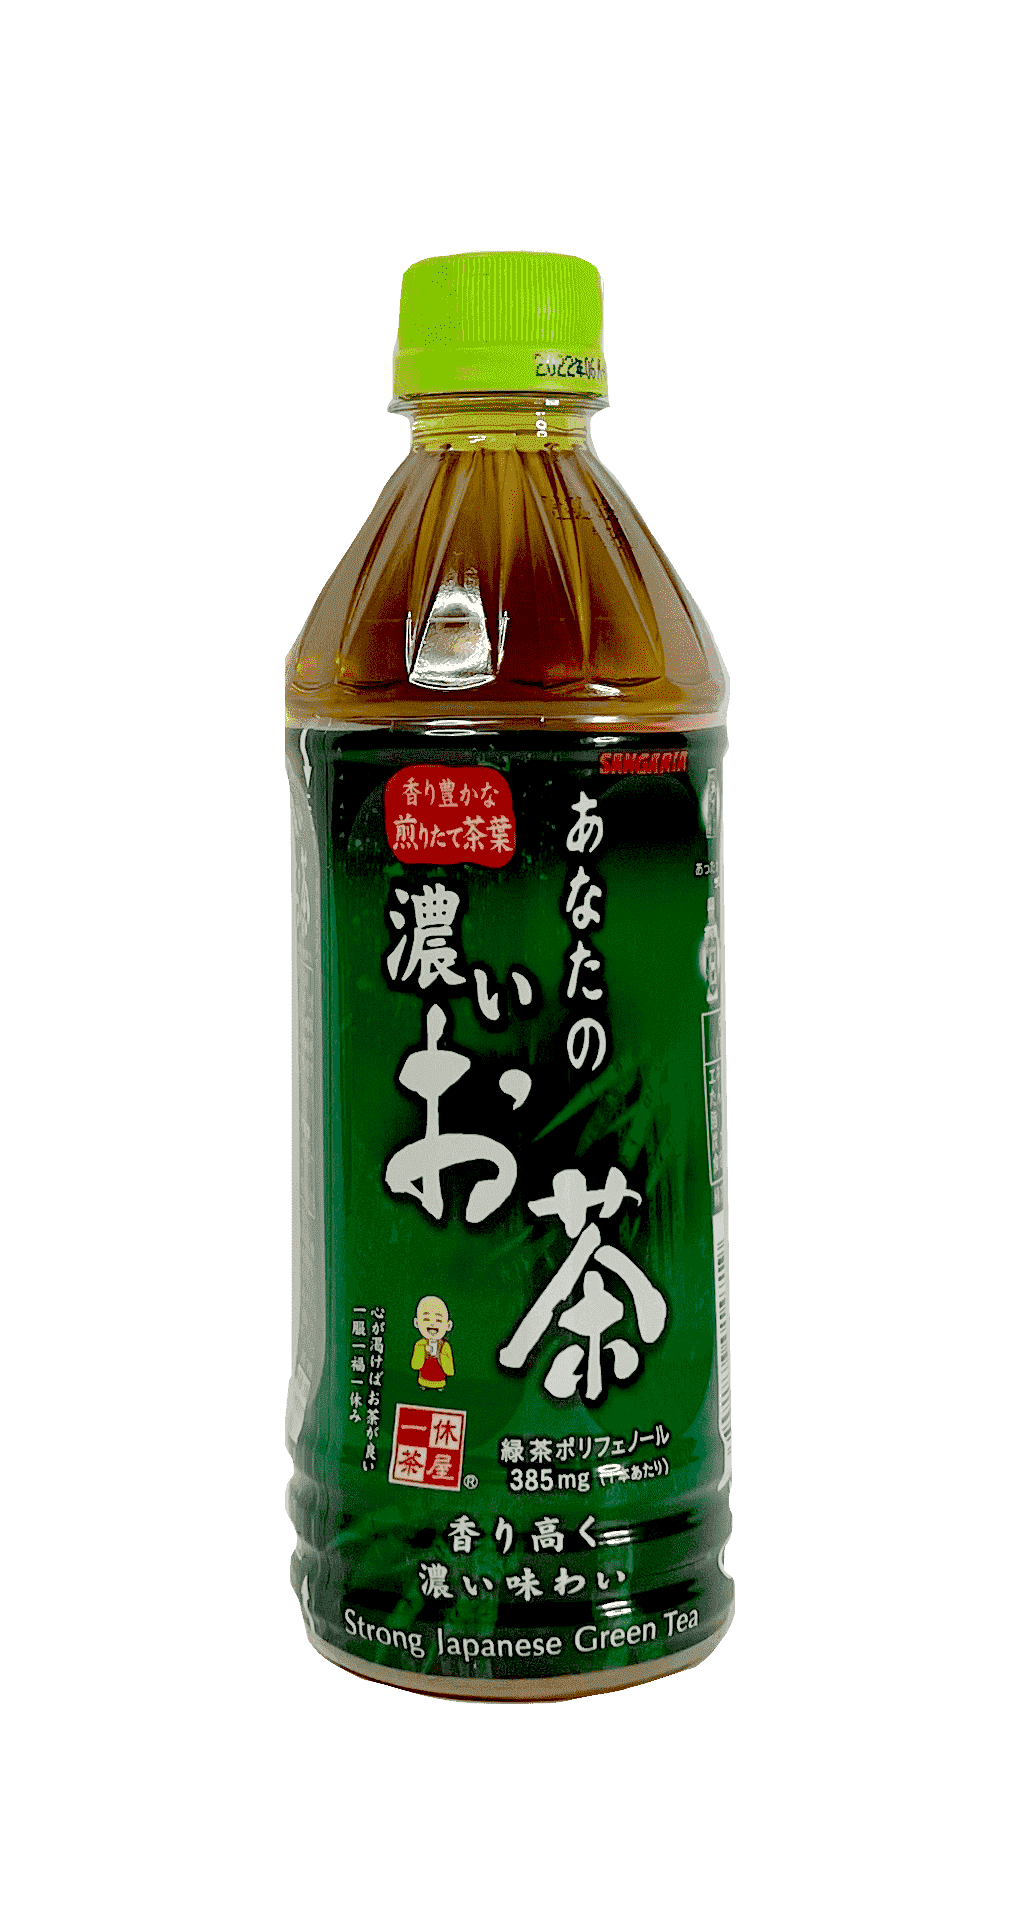 Ocha 茶飲 Anata No Koi 500ml Sangaria 日本